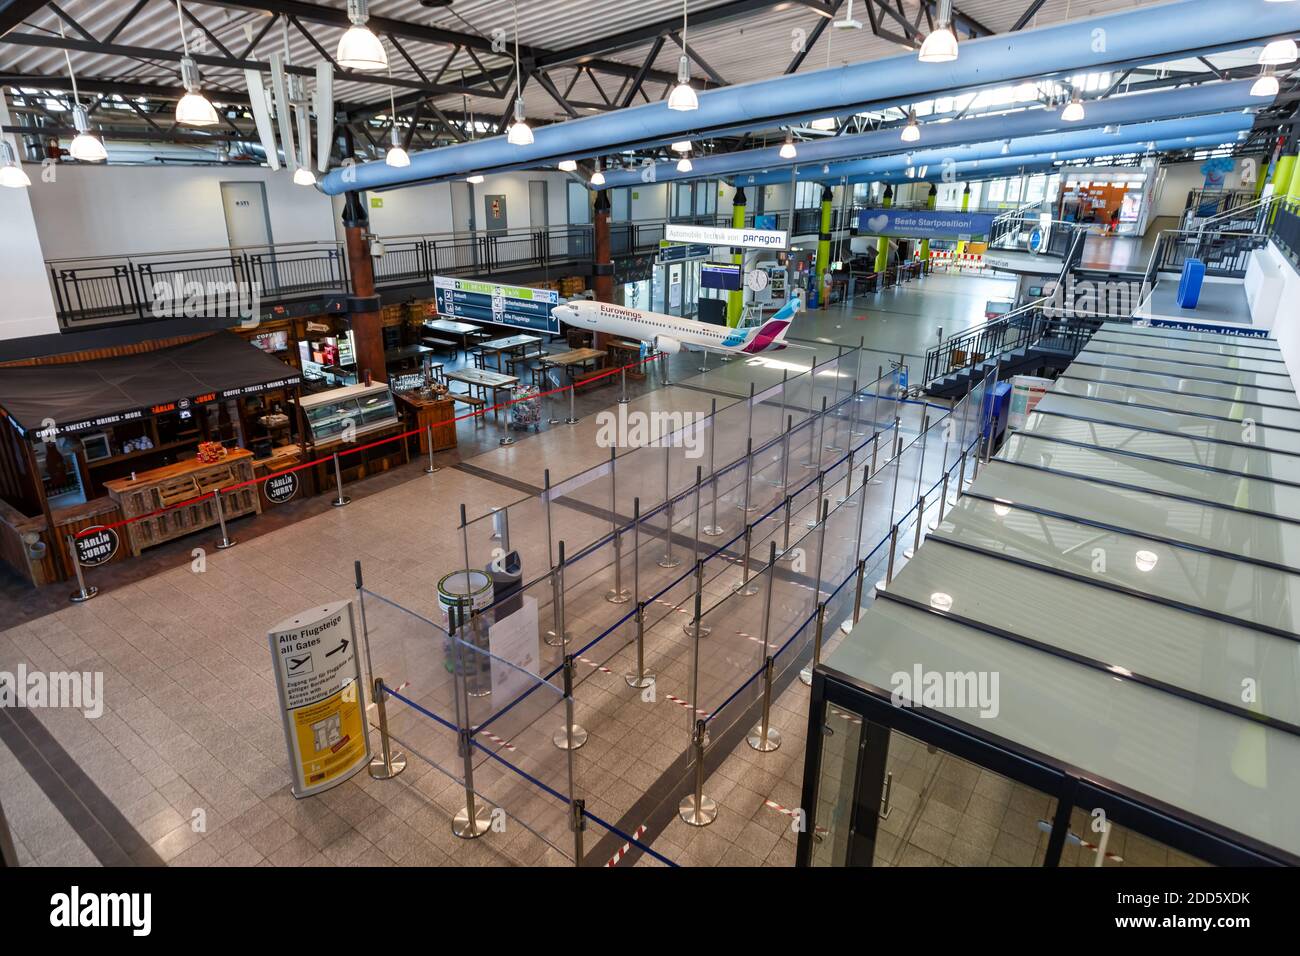 Ahden, Deutschland - 8. August 2020: Terminalgebäude des Flughafens Paderborn Lippstadt in Deutschland. Stockfoto